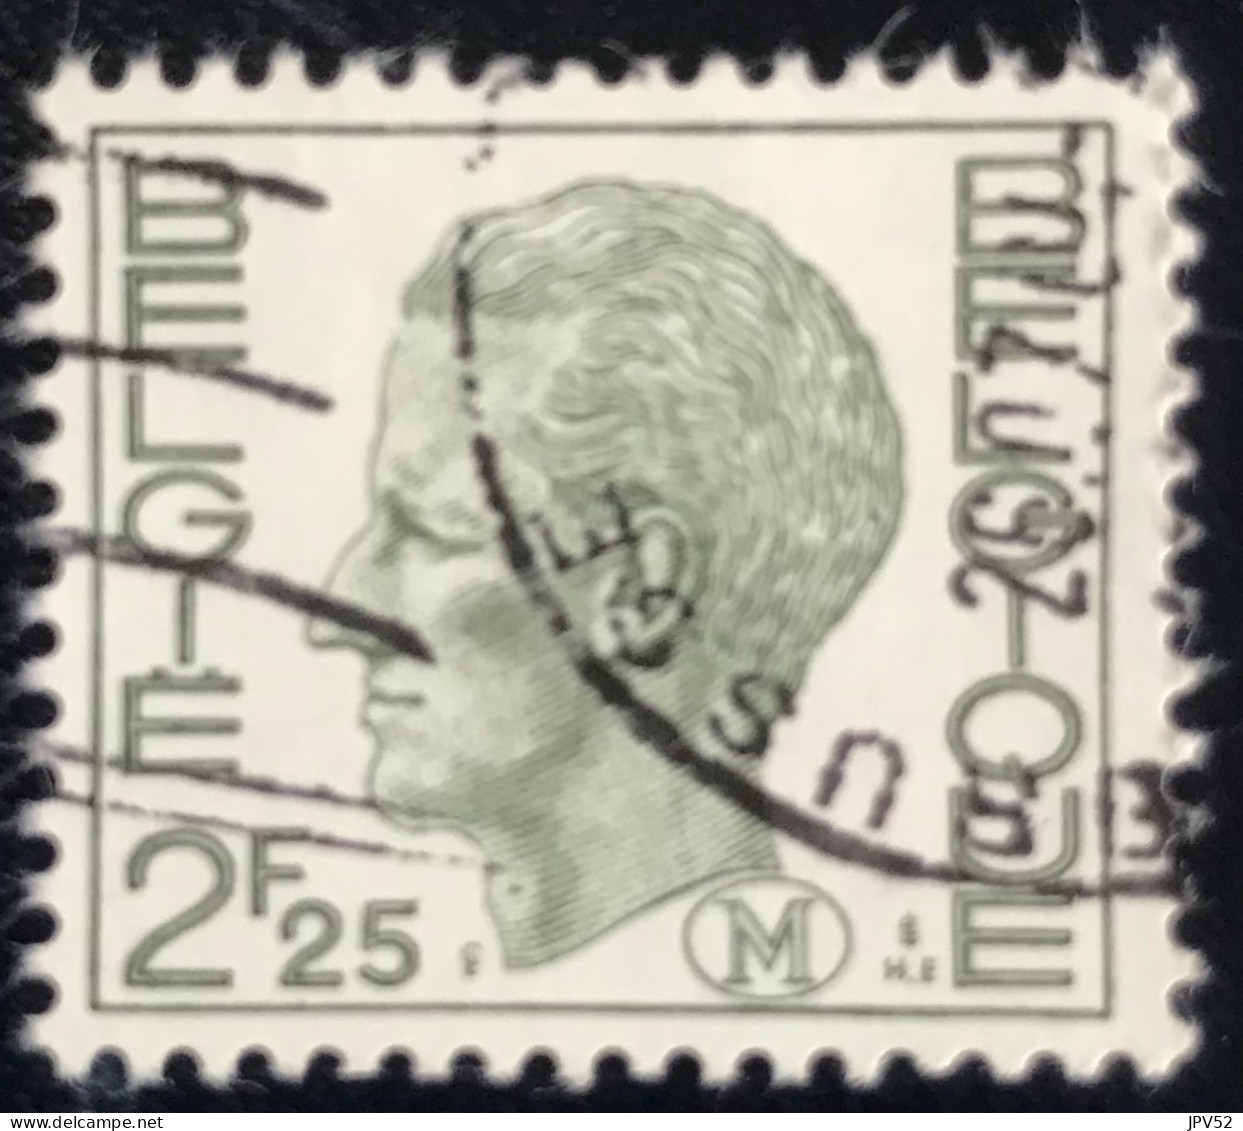 België - Belgique - C18/26 - 1972 - (°)used - Michel 3 - Militair - Koning Boudewijn - Briefmarken [M]